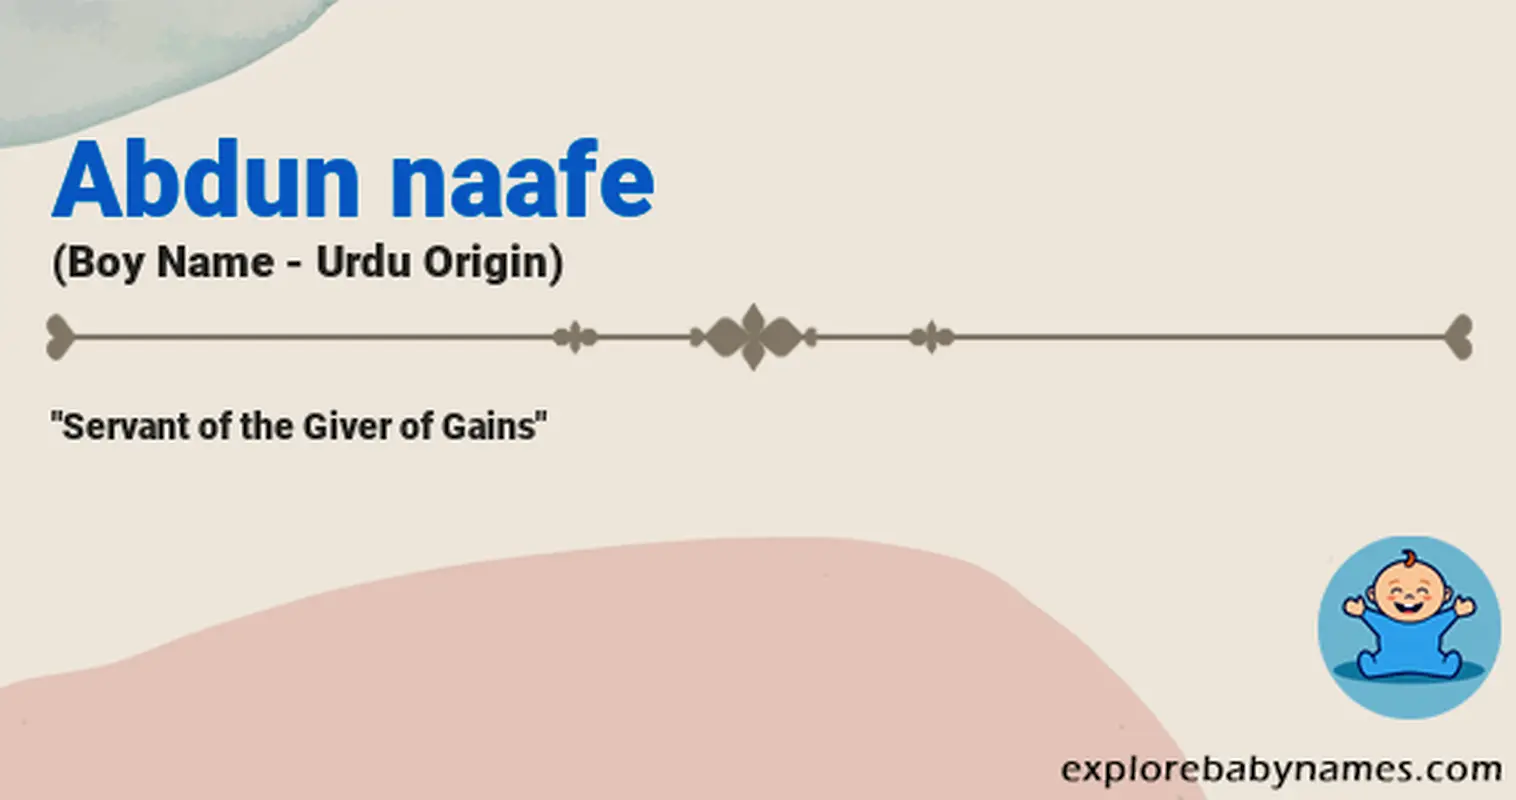 Meaning of Abdun naafe